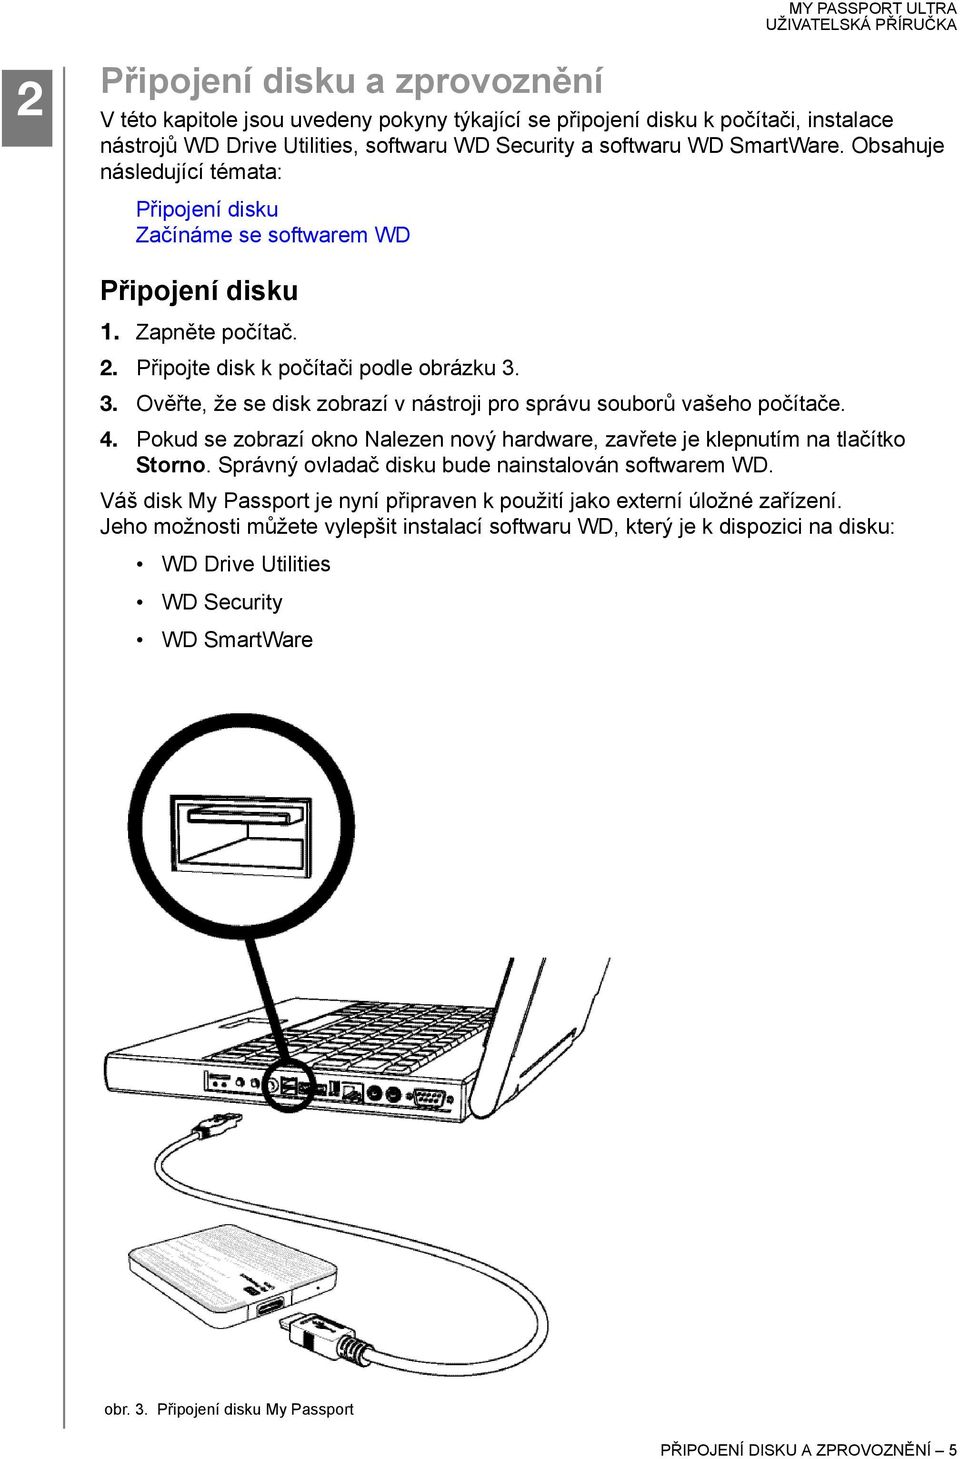 3. Ověřte, že se disk zobrazí v nástroji pro správu souborů vašeho počítače. 4. Pokud se zobrazí okno Nalezen nový hardware, zavřete je klepnutím na tlačítko Storno.